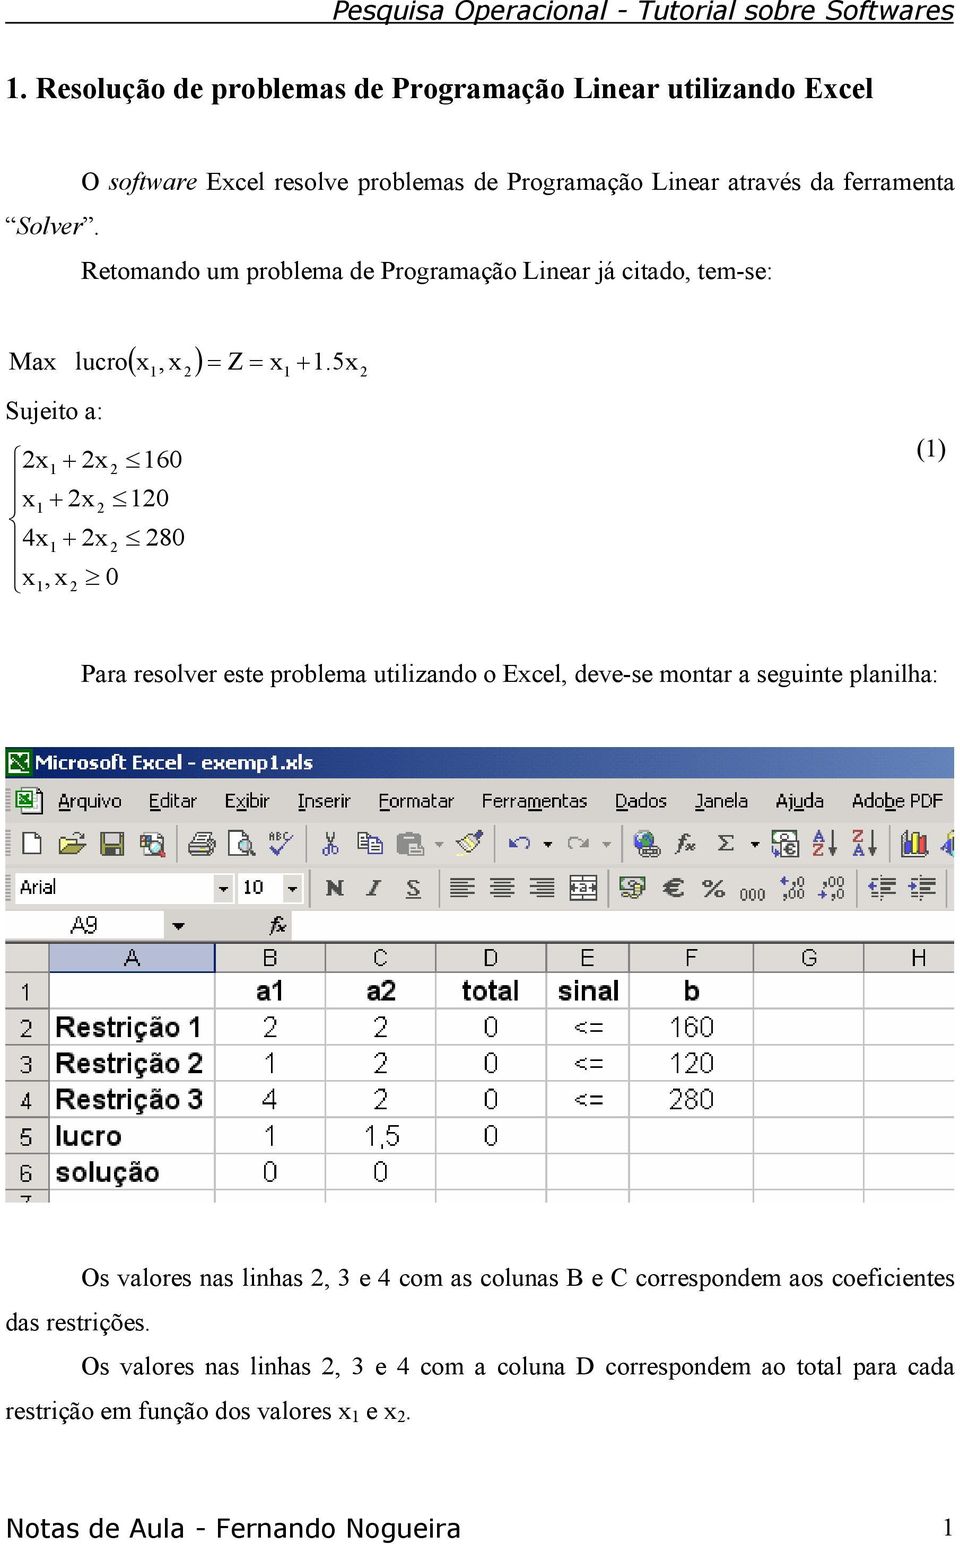 5x 2 Max lucro + Sujeito a: 2x1 + 2x 2 160 x1 + 2x 2 120 4x1 + 2x 2 280 x1, x 2 0 (1) Para resolver este problema utilizando o Excel, deve-se montar a seguinte